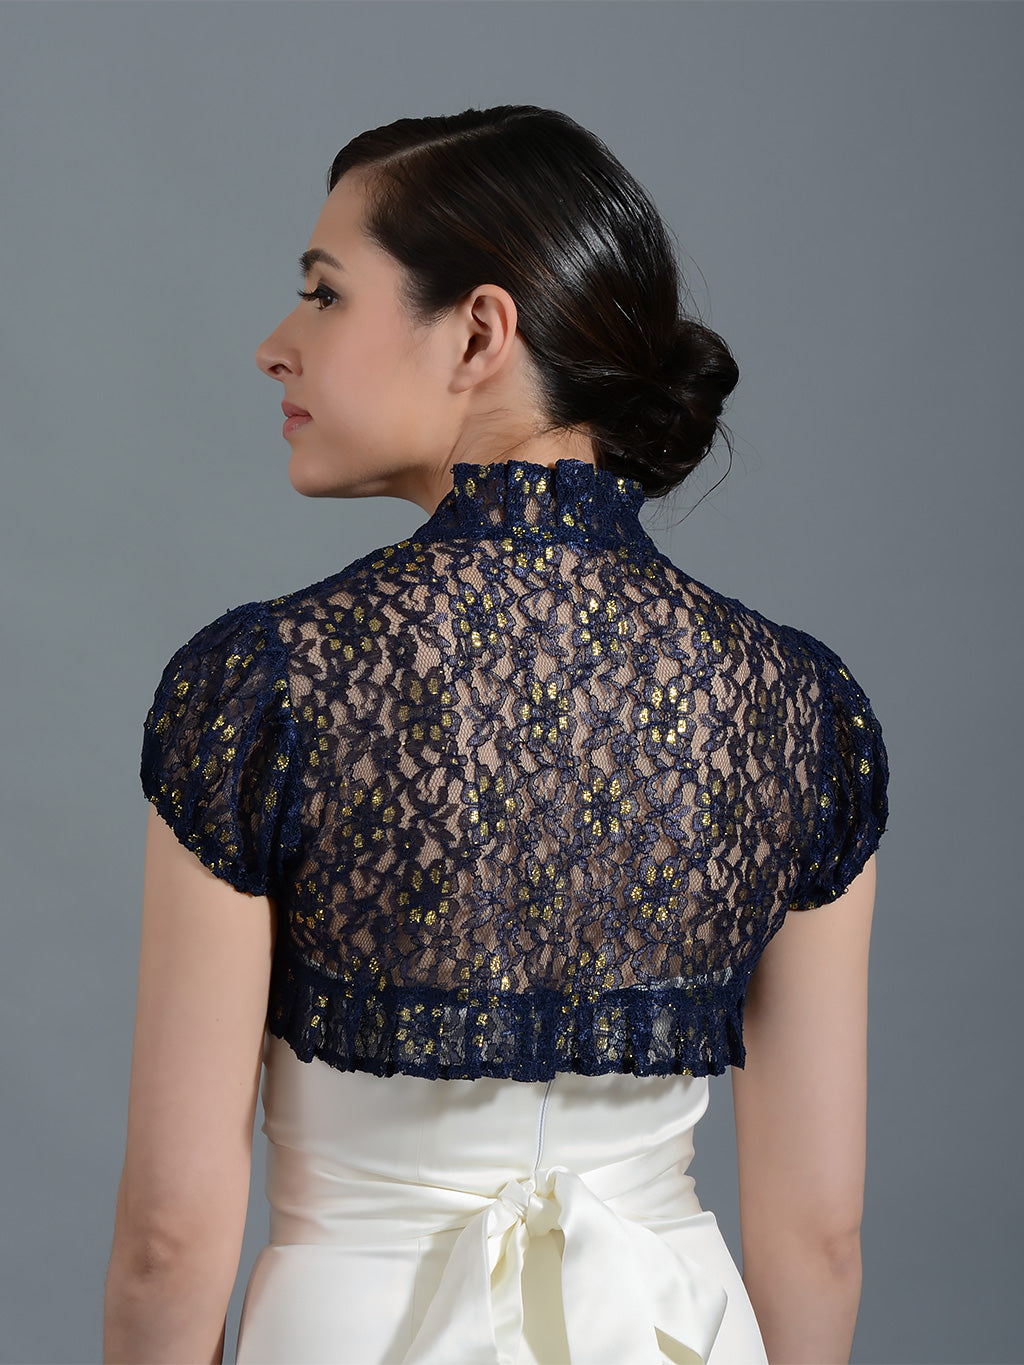 Philosophical charm Decode Navy Blue short sleeve corded lace wedding bolero jacket Lac